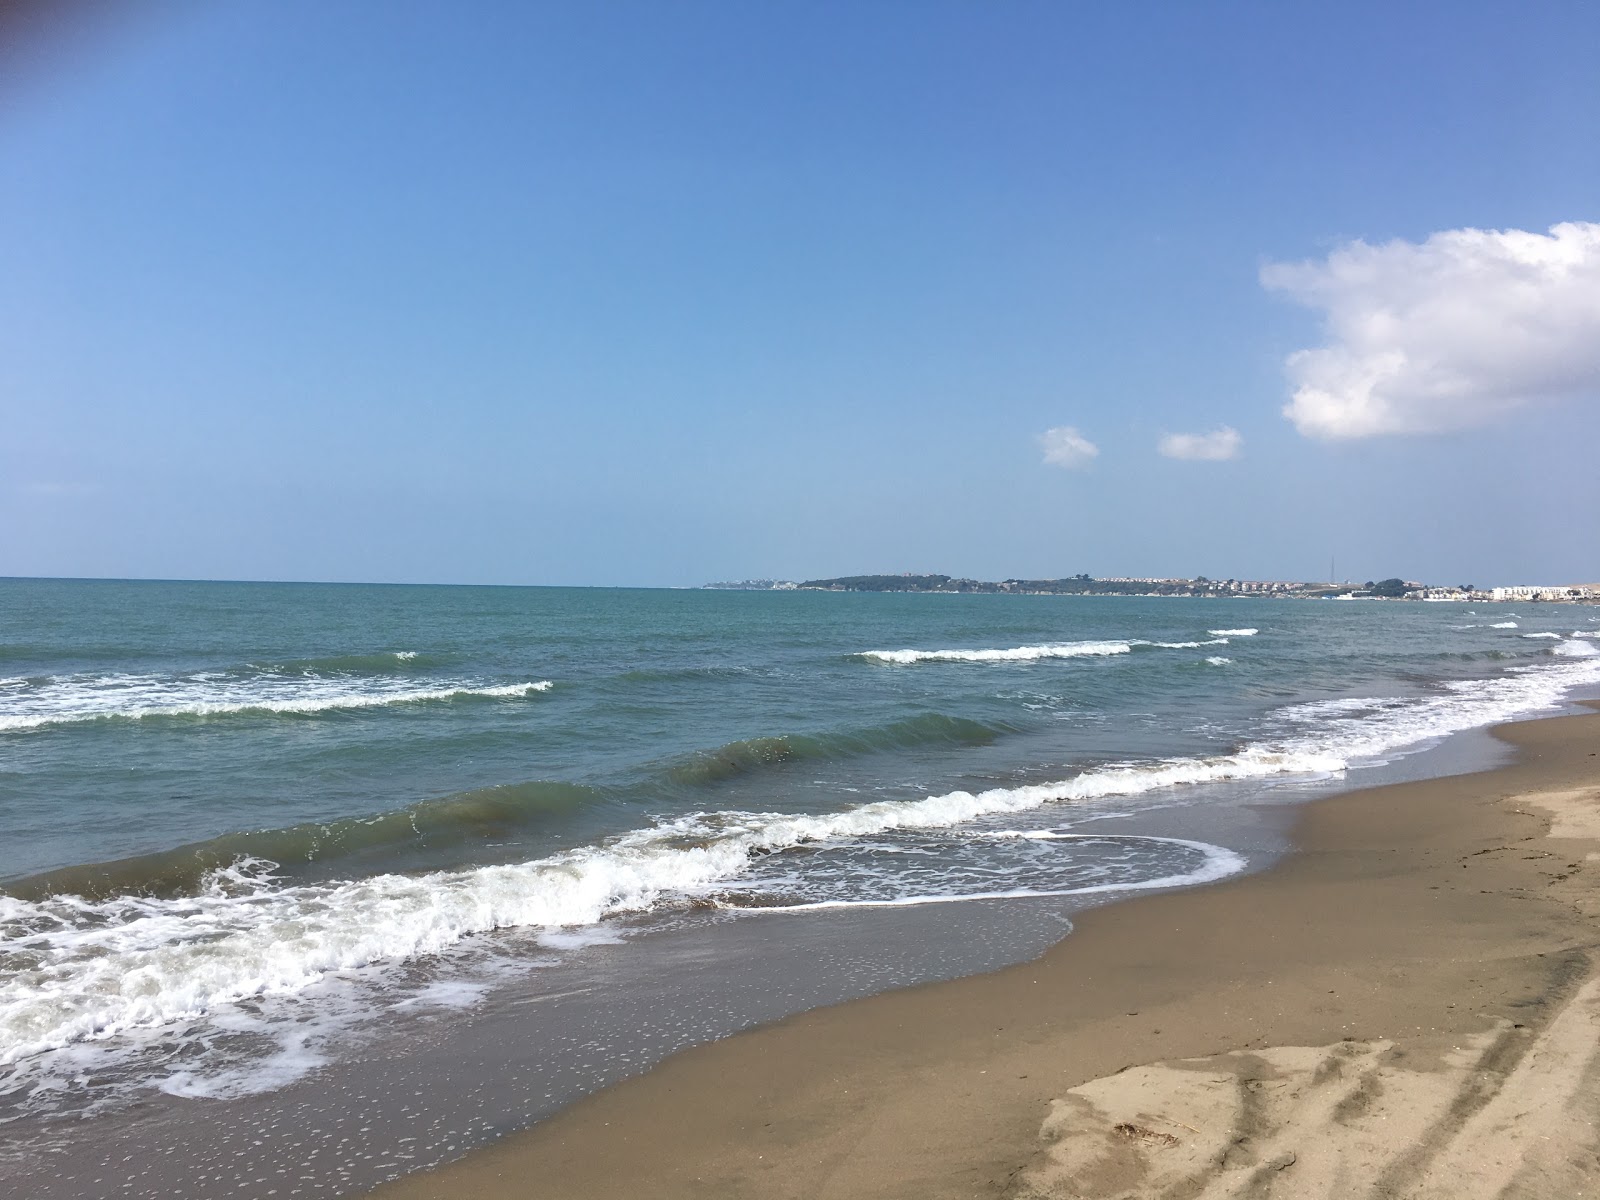 Tarsus beach'in fotoğrafı parlak kum yüzey ile